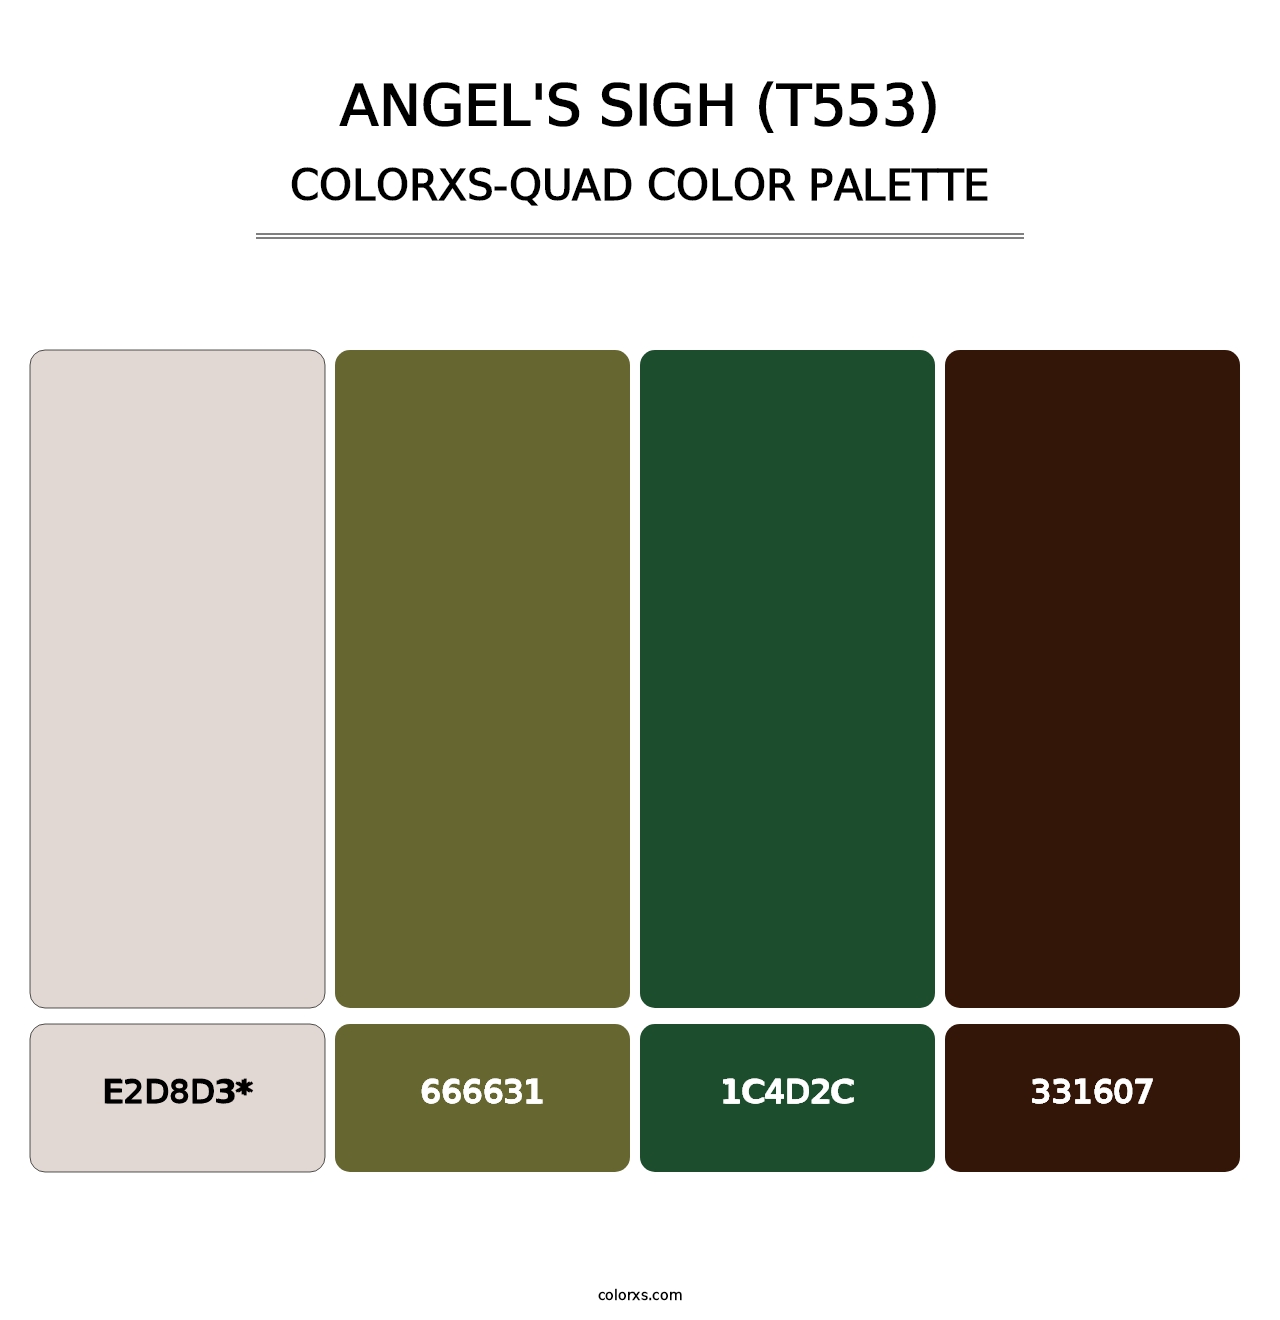 Angel's Sigh (T553) - Colorxs Quad Palette